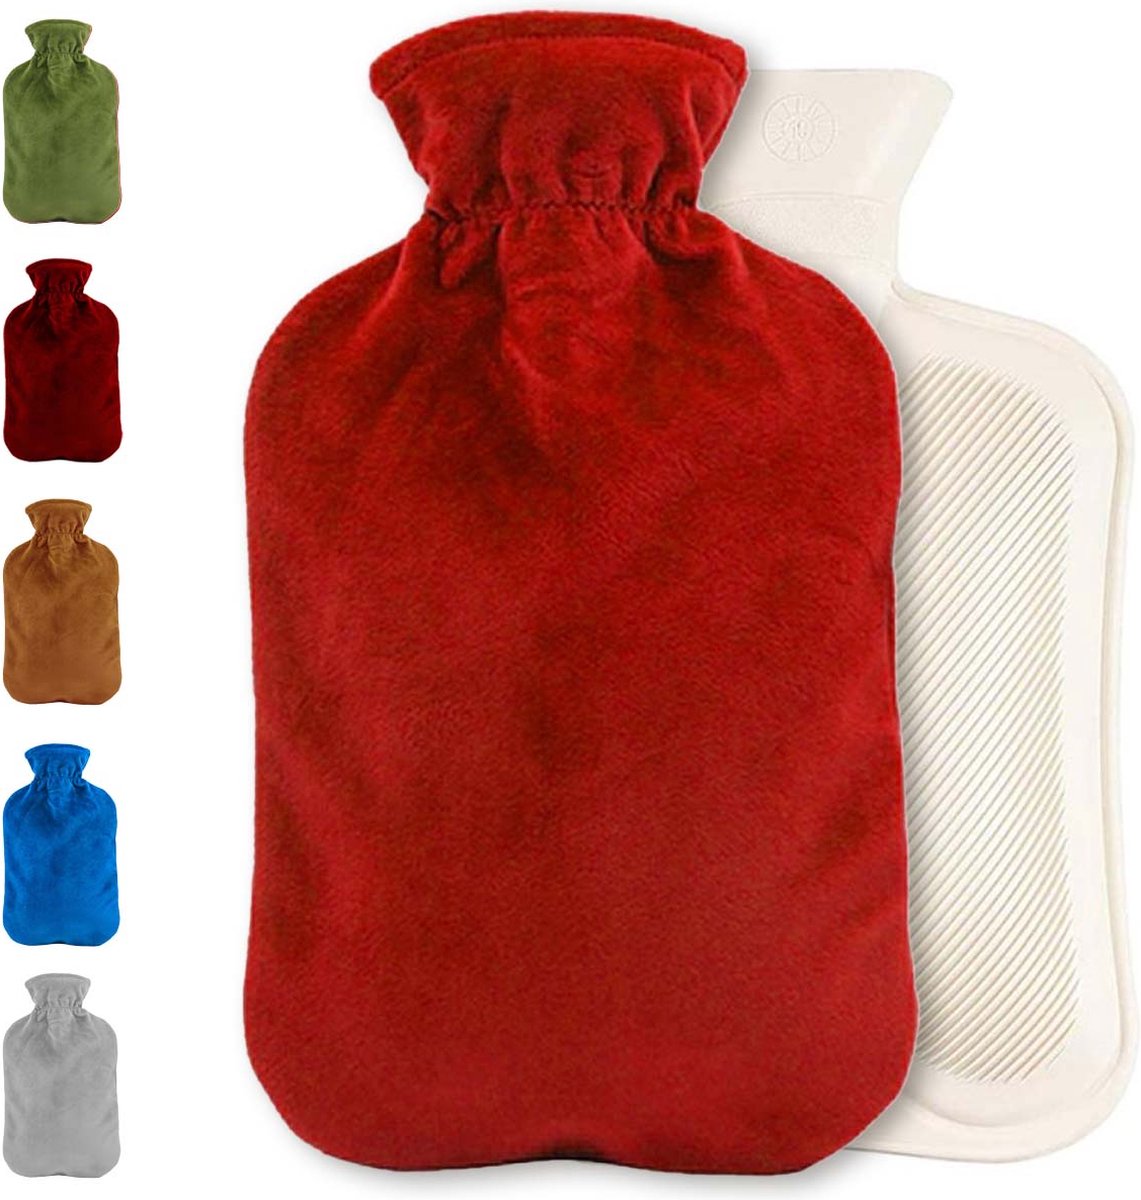 Warmwaterkruik met fleece hoes | Warmtekruik | Kruik | Warmwaterkruik | Rubber | 2 liter | Rood | Inclusief fleece hoes | Able & Borret